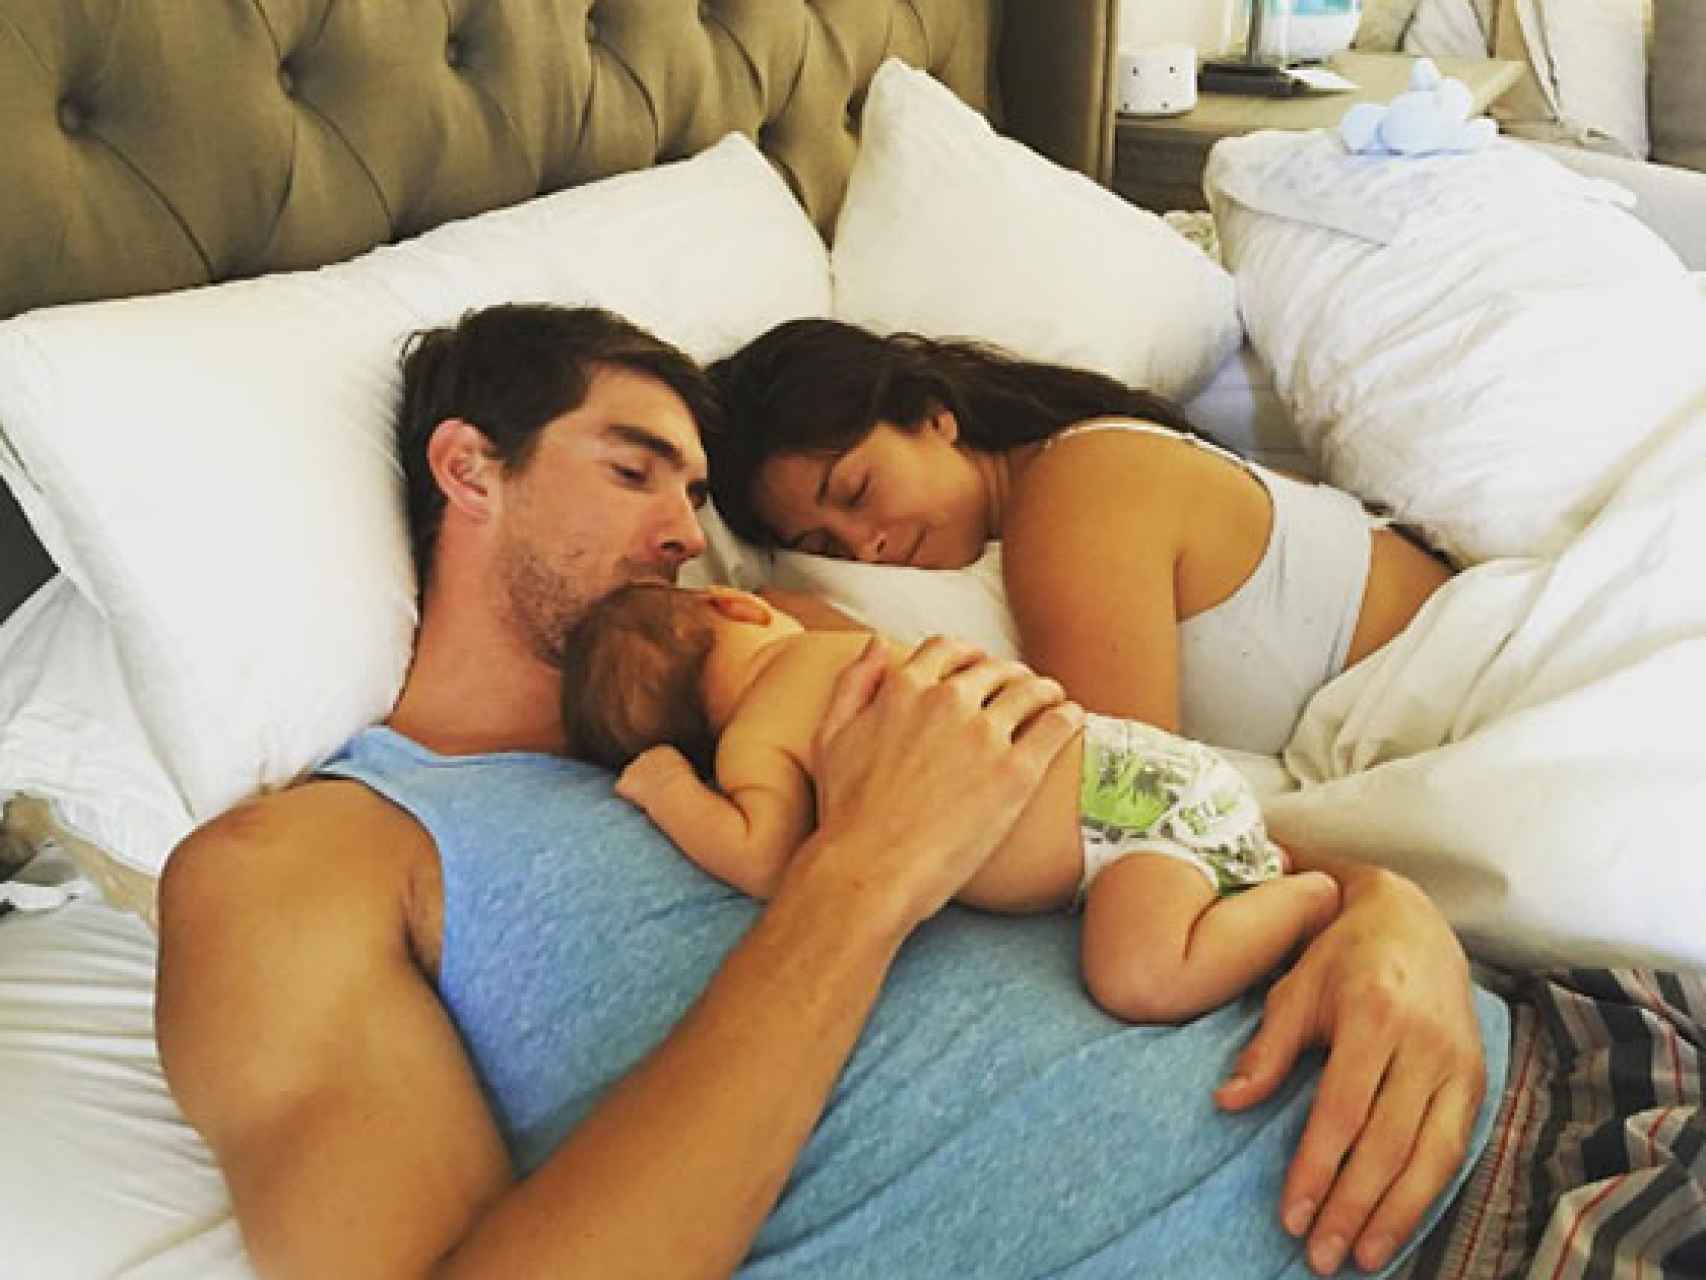 La familia Phelps al completo relajados en la cama.